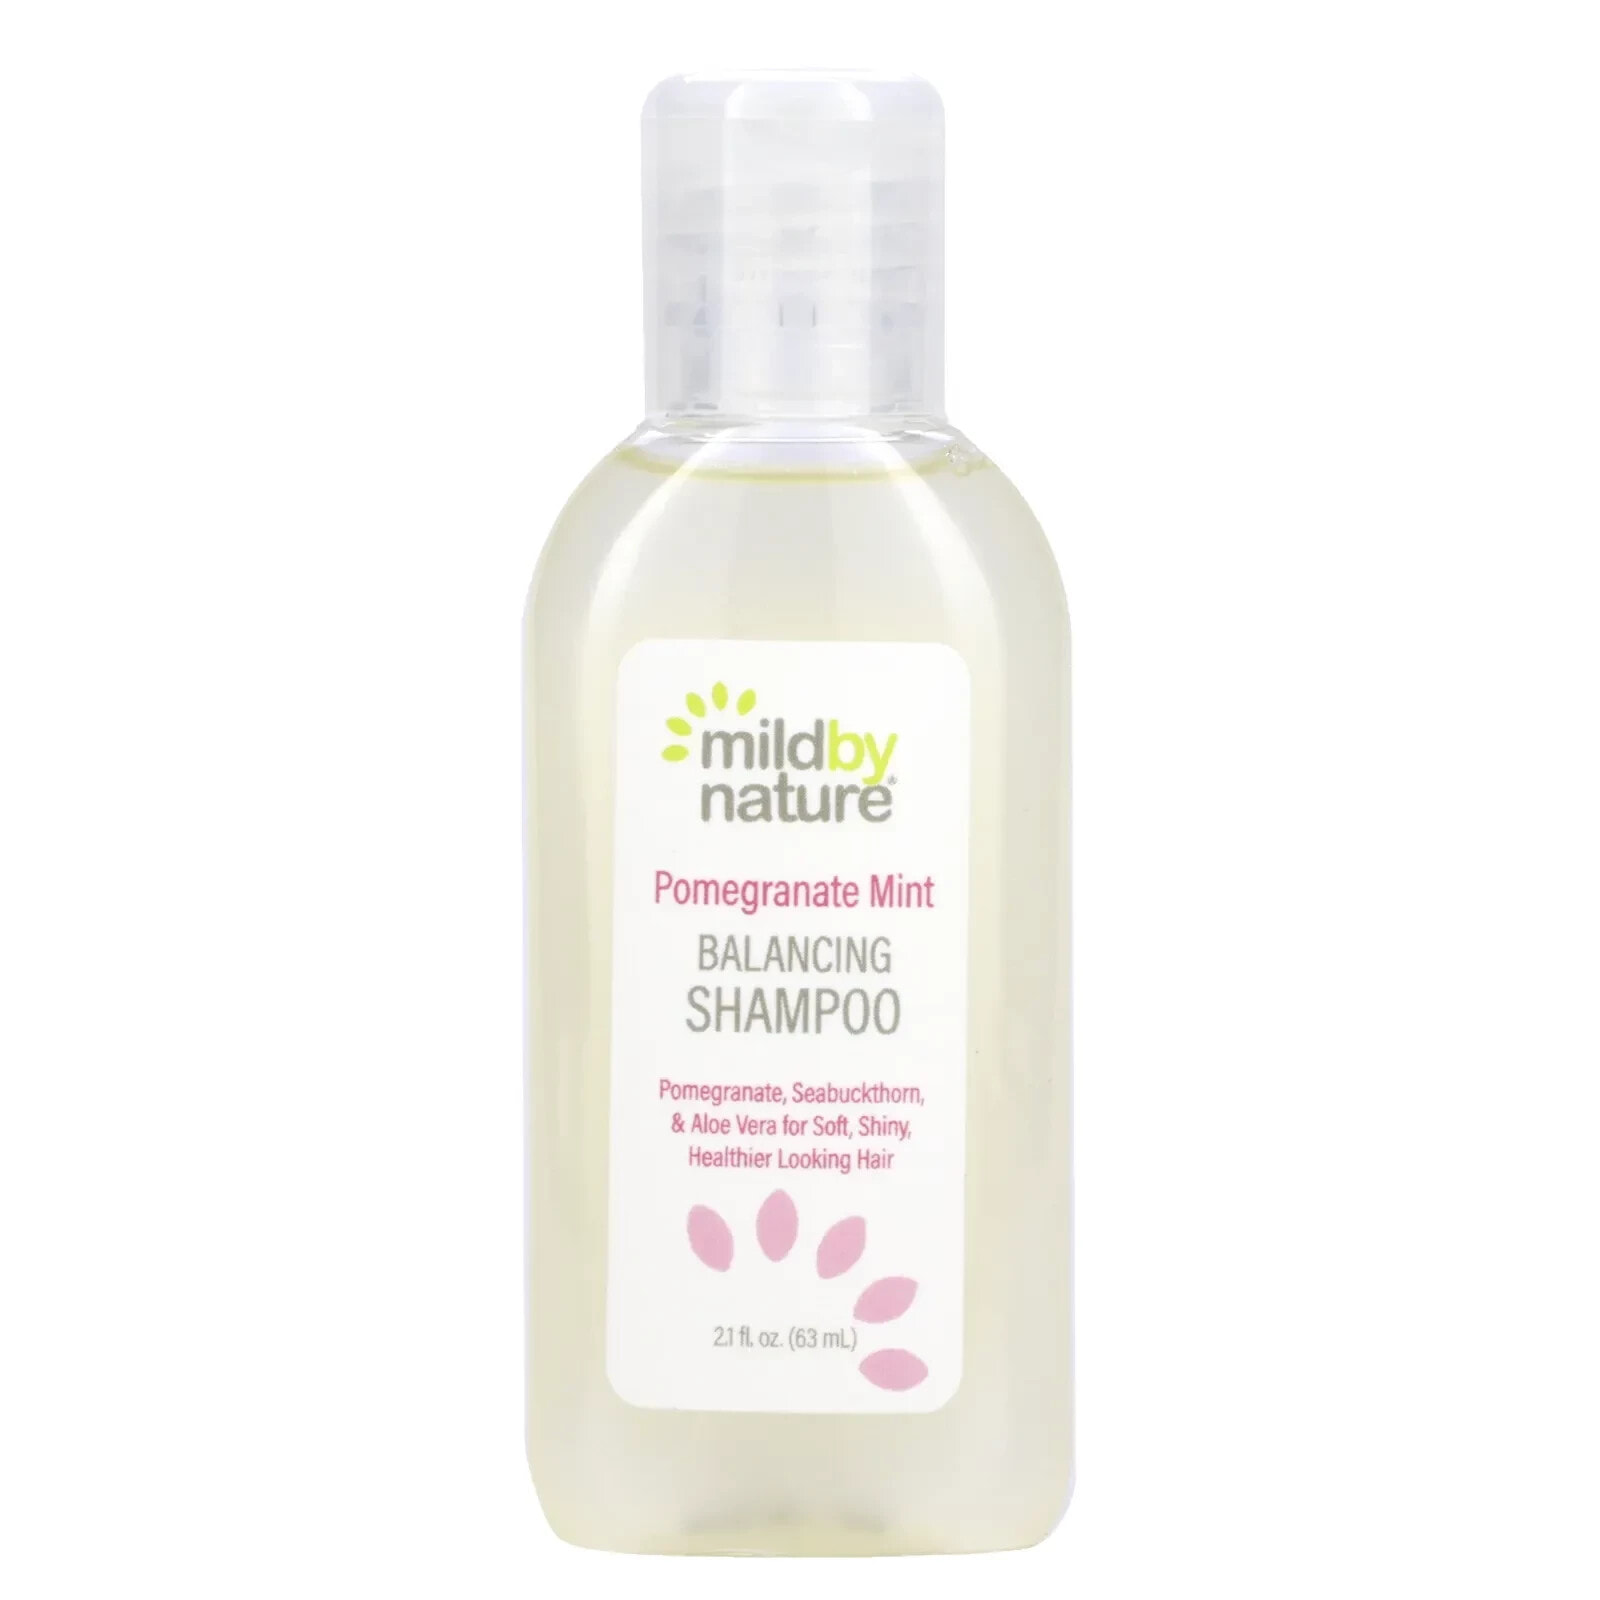 Pomegranate Mint Balancing Shampoo, 16 fl oz (473 ml)